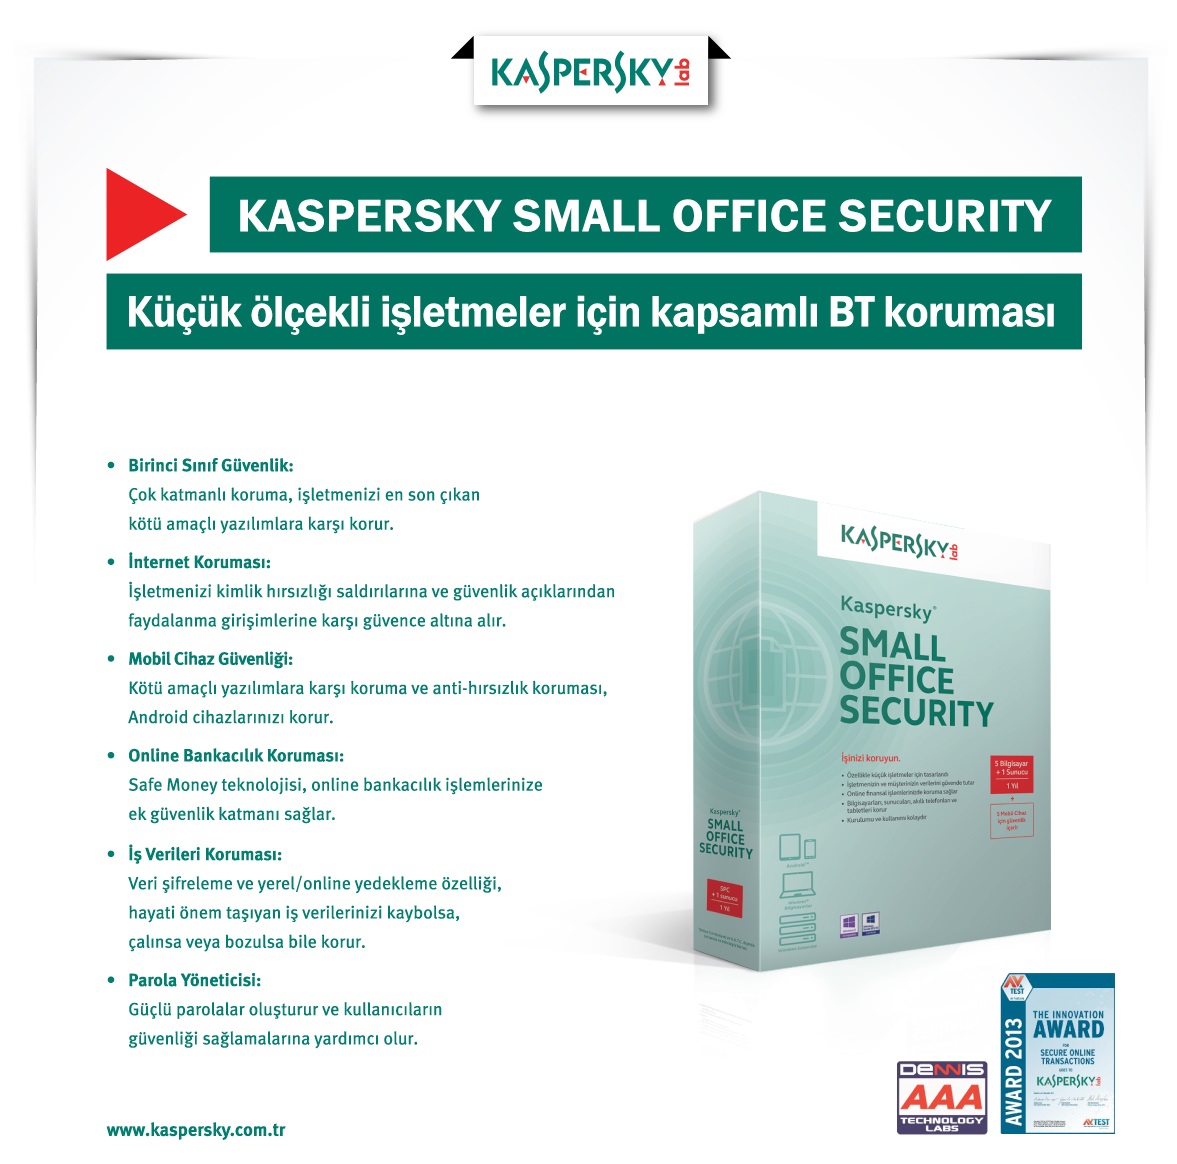 Kaspersky small office security ключи. Kaspersky small Office Security. Kaspersky small Office Security - 1-год 5 устройств. Kaspersky small Office Security kl4542ramfr. Small Office Security.